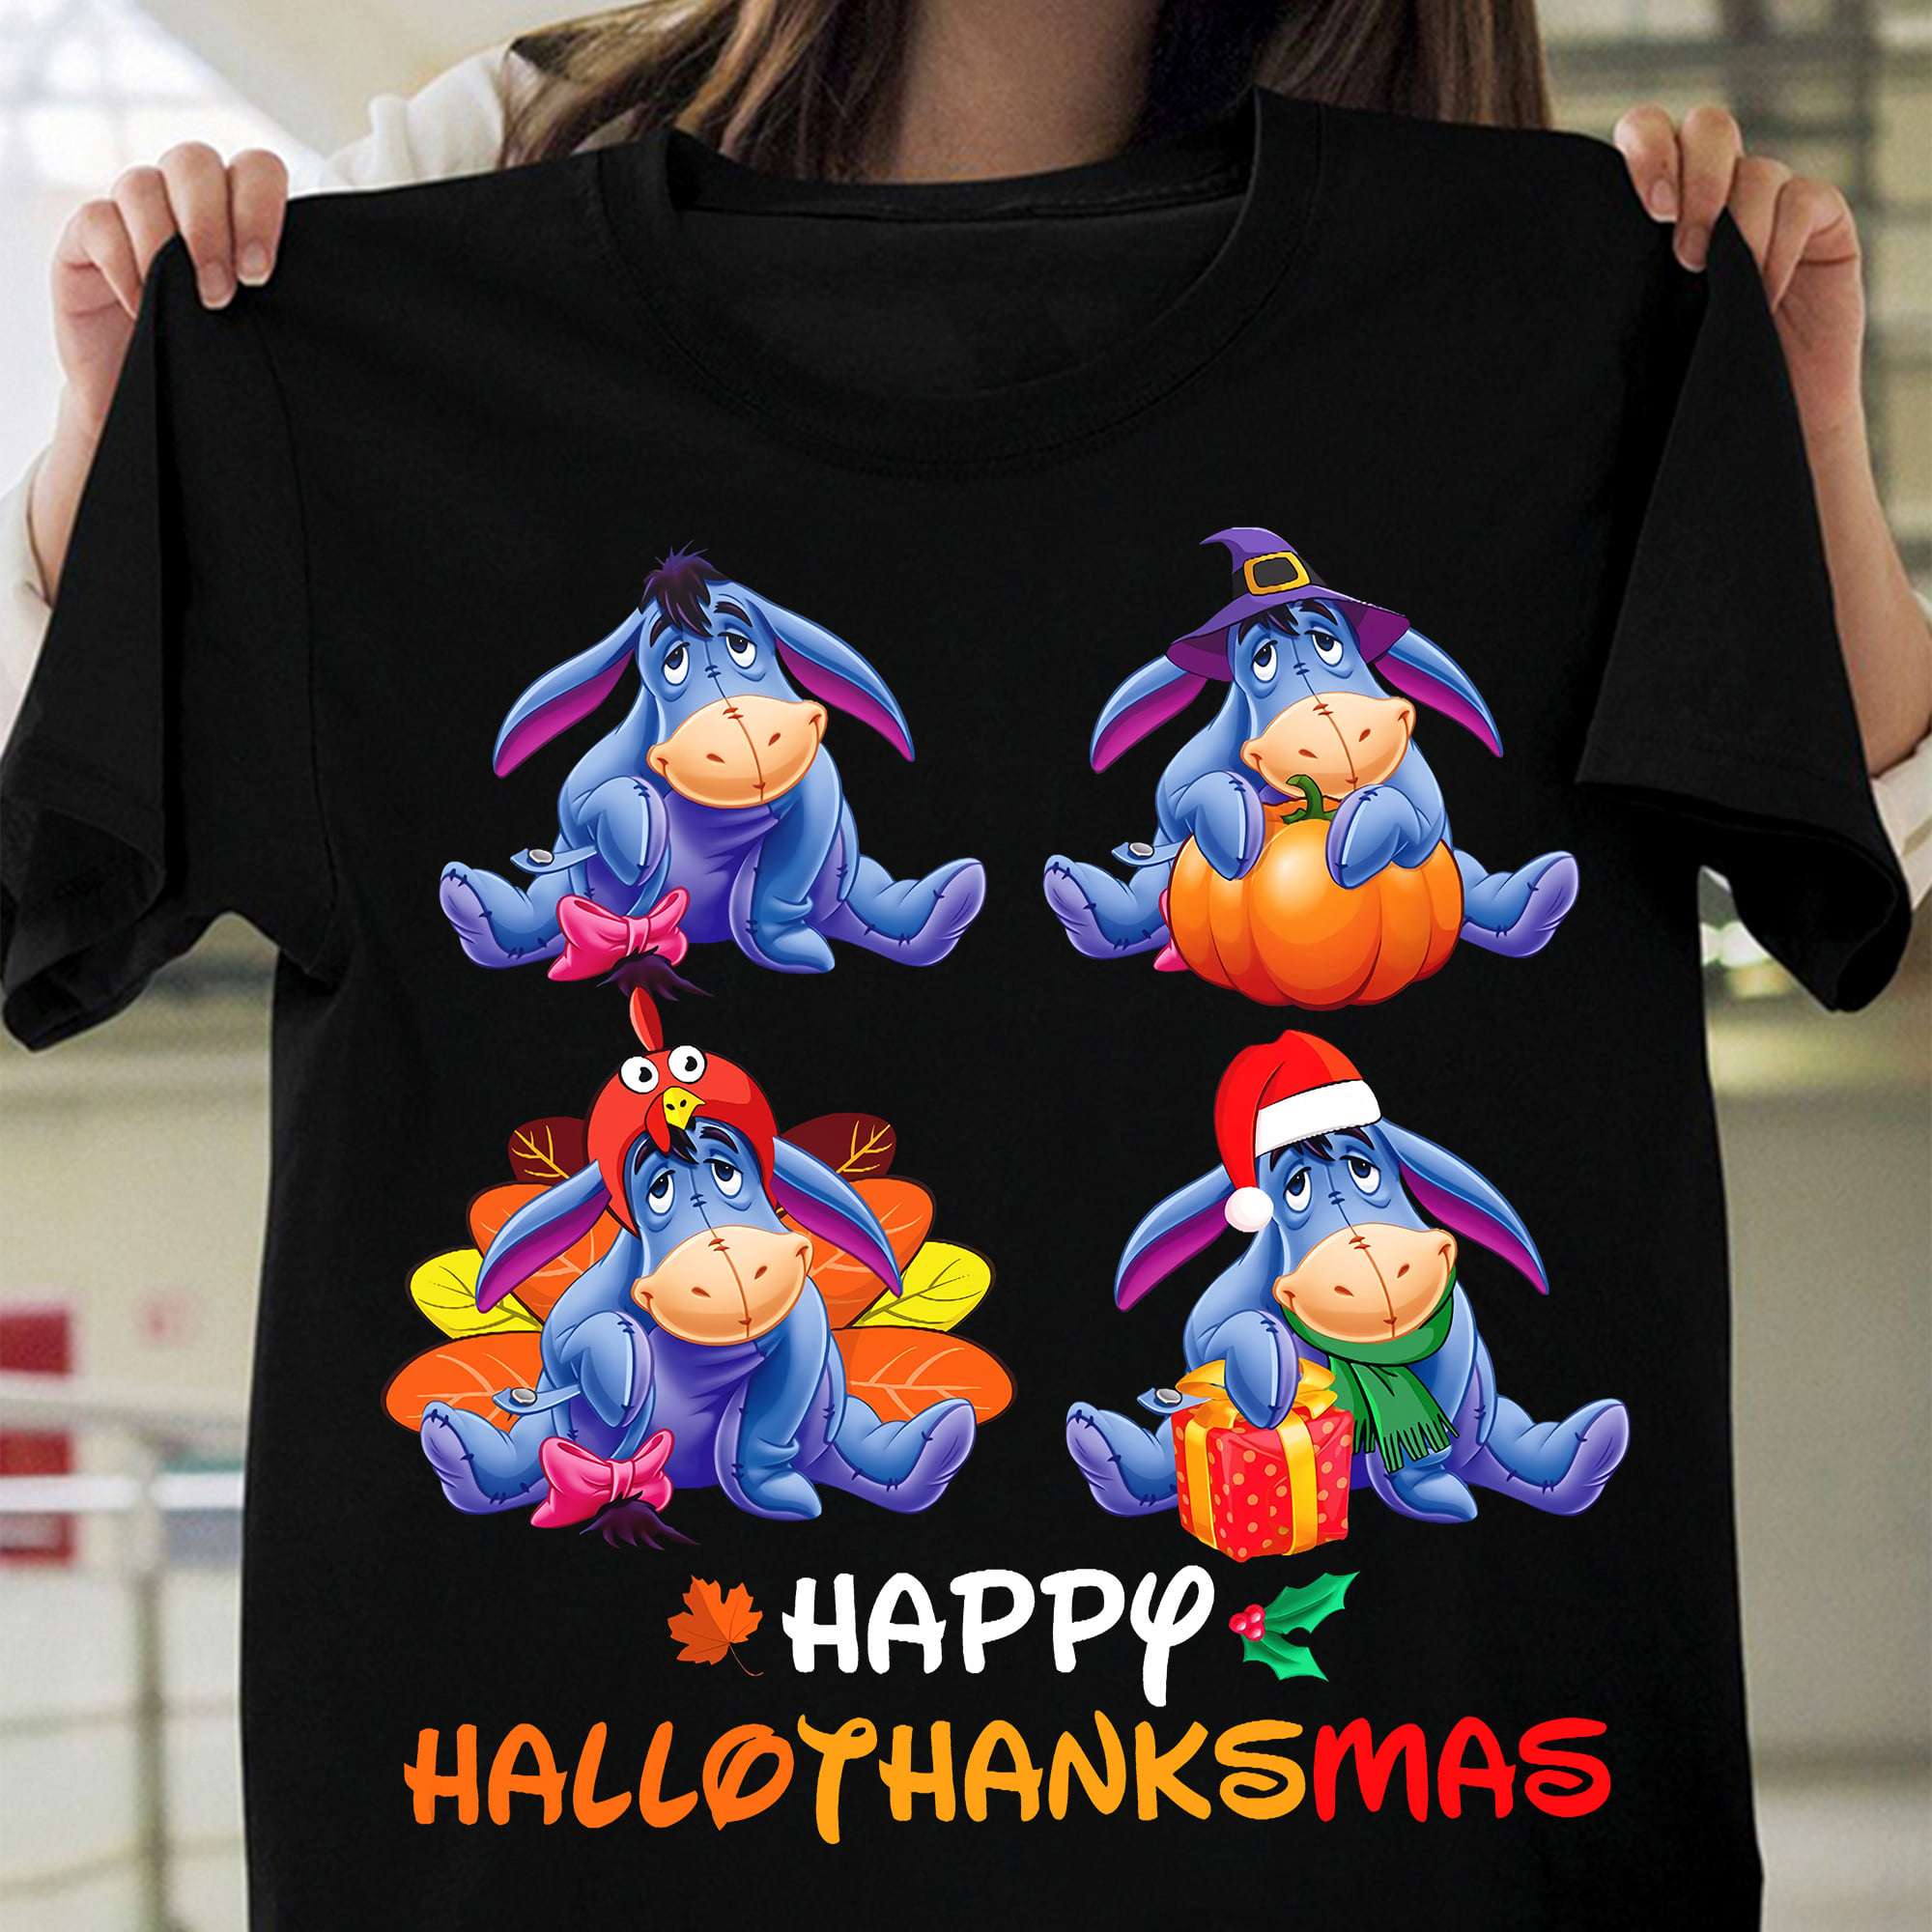 Happy HalloThanksMas - Eeyore donkey, Happy Halloween, Merry Christmas T-shirt